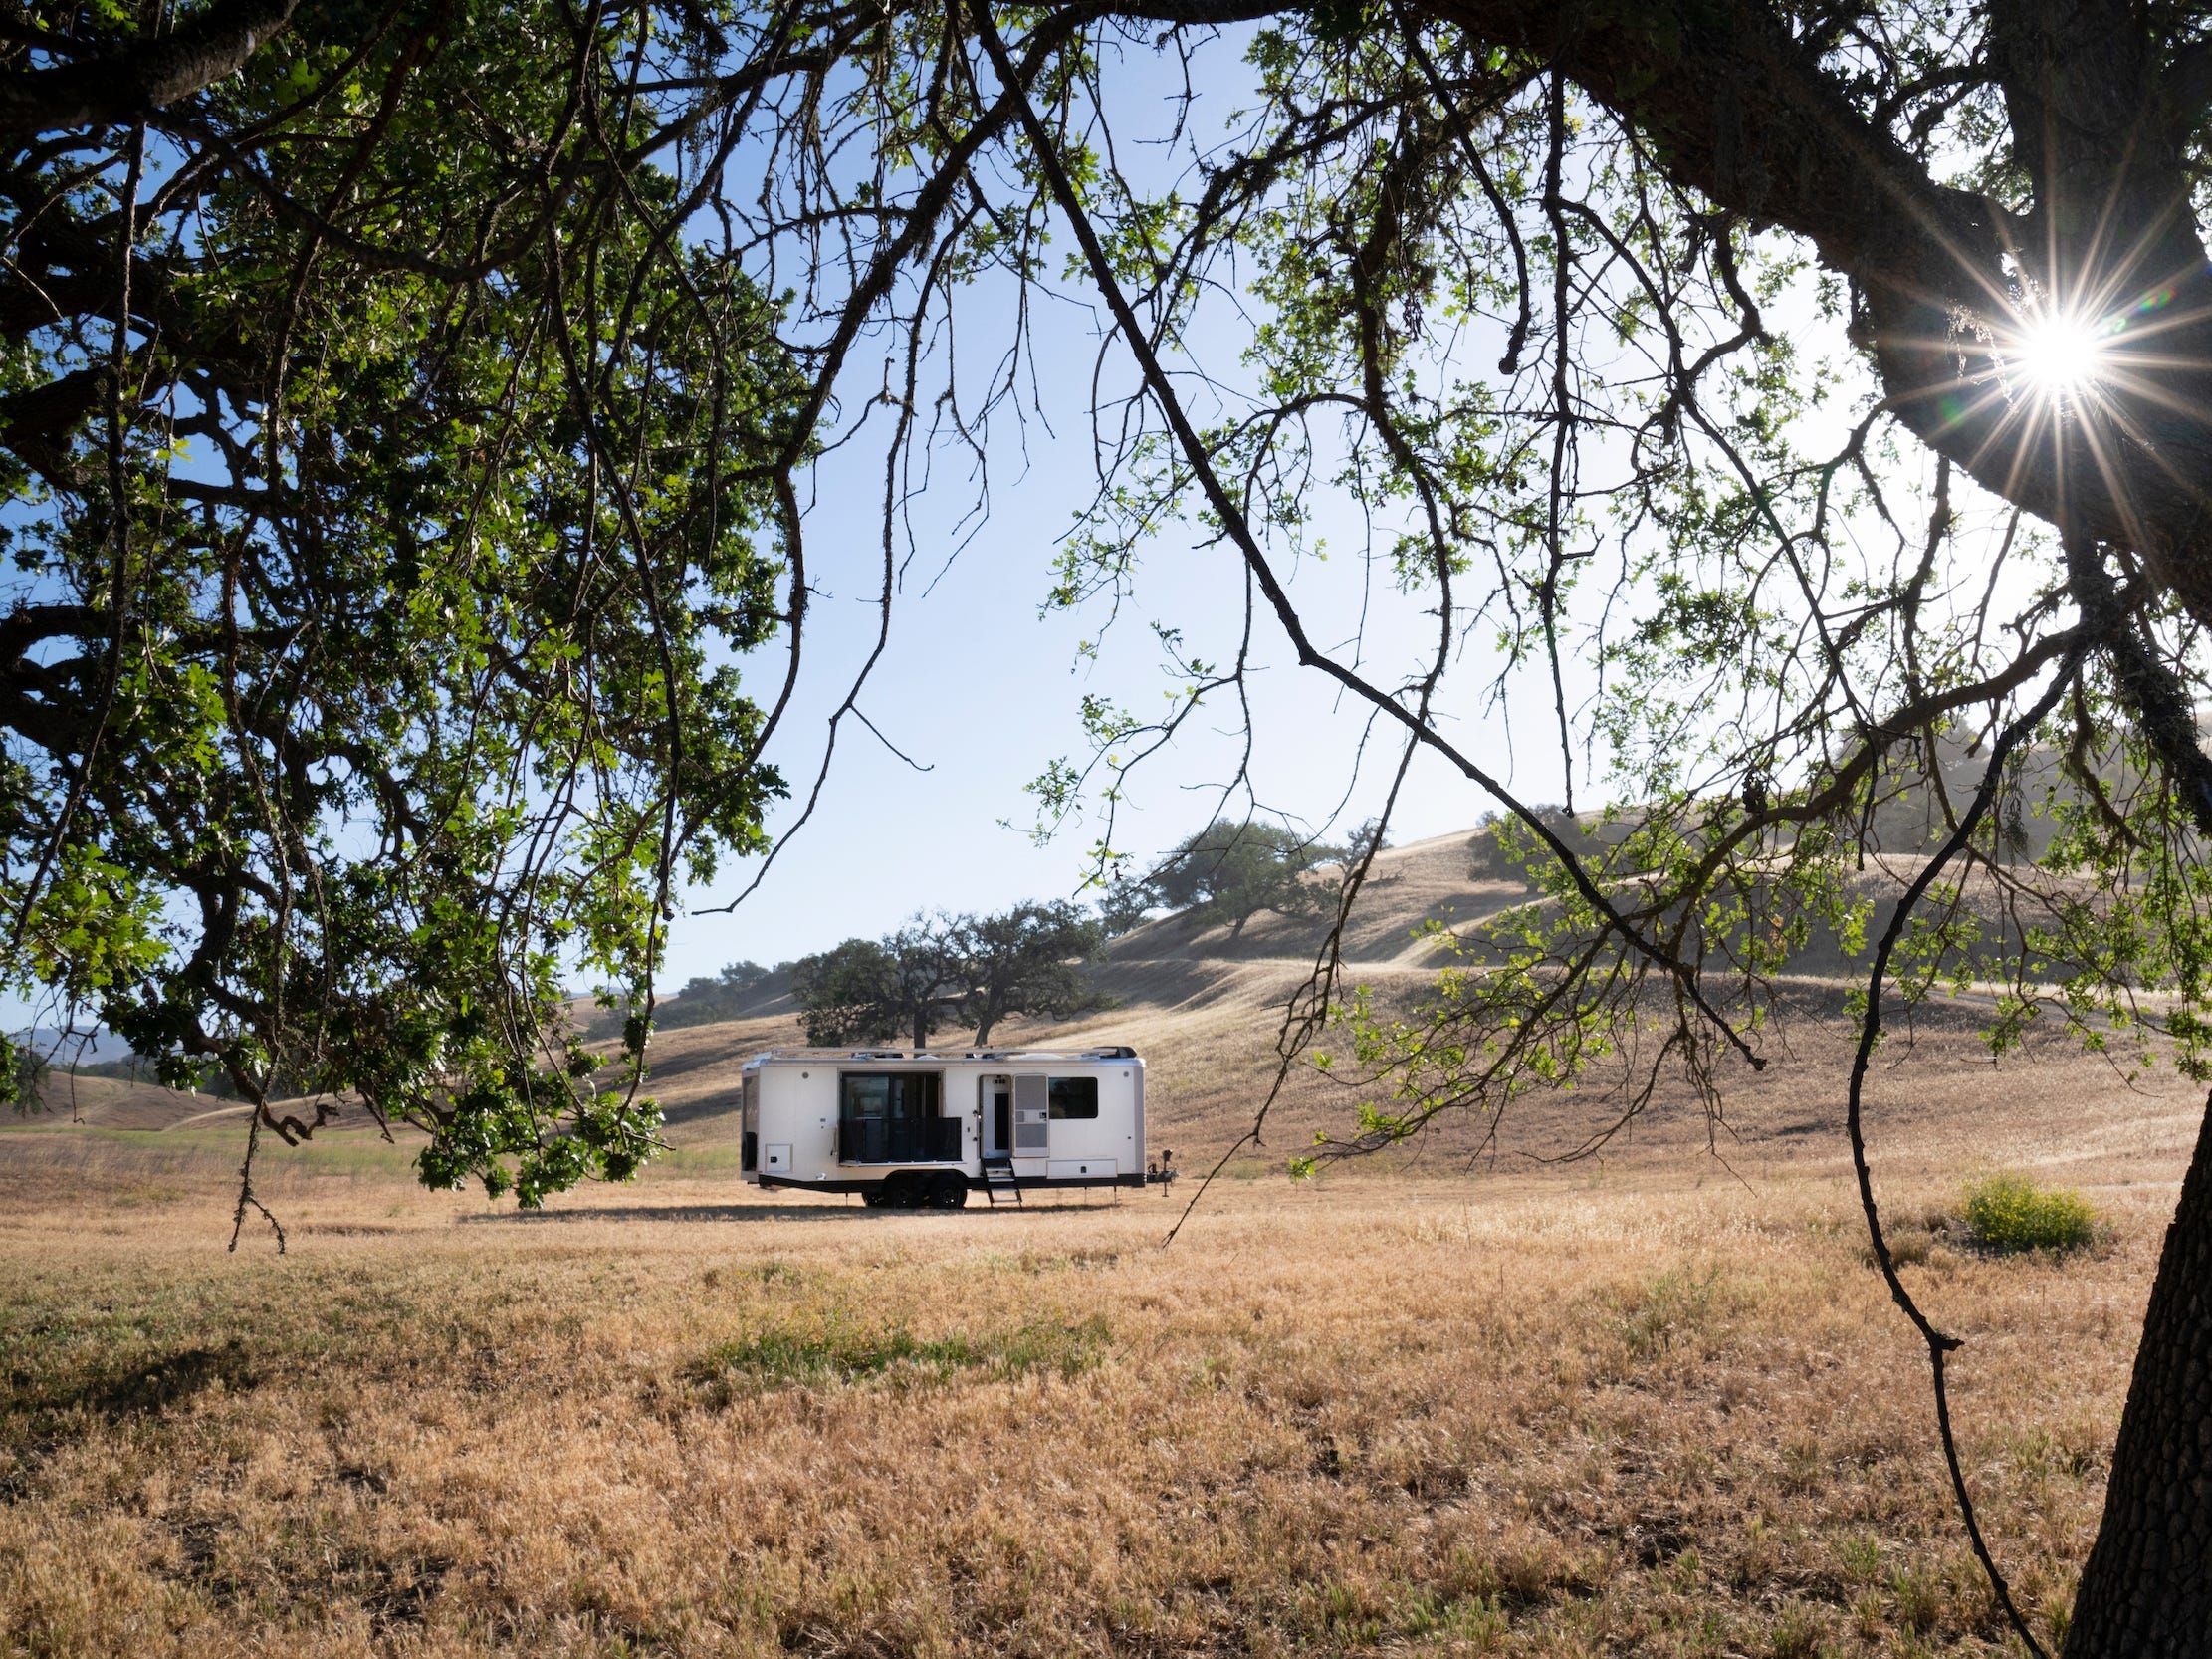 Het exterieur van de reis trailer zoals het op een bruin veld staat.